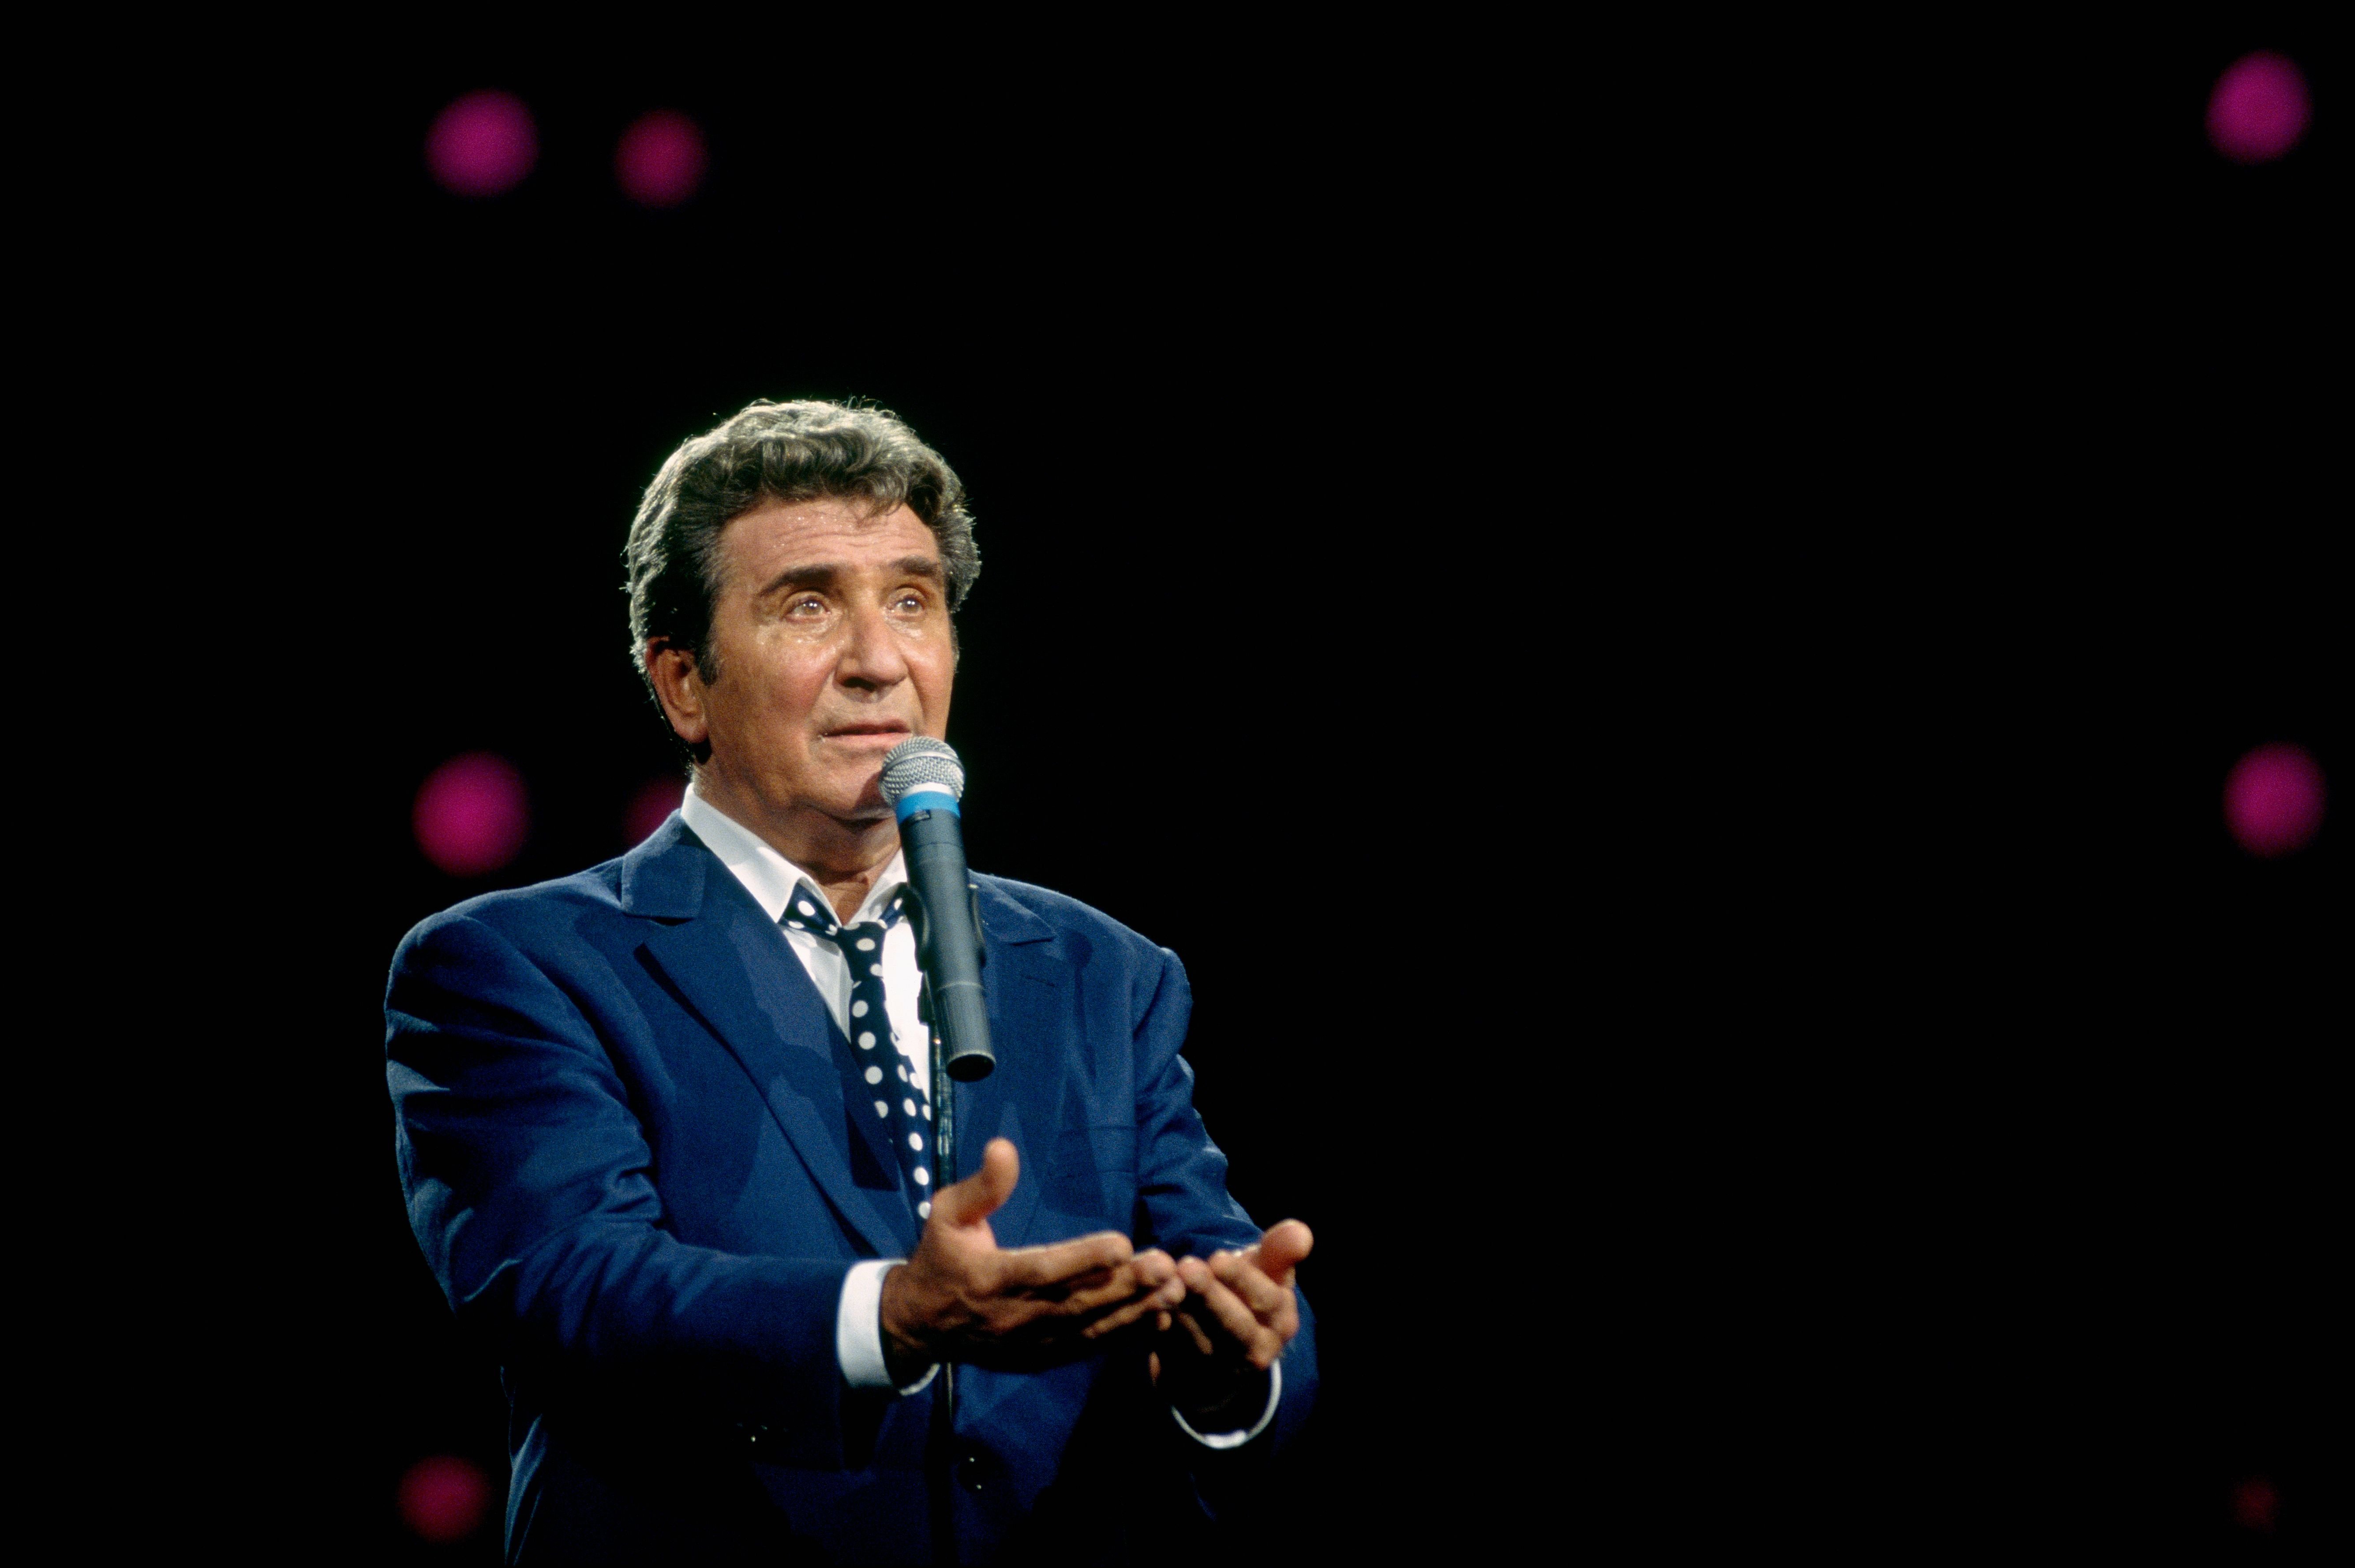 Le chanteur Gilbert Bécaud sur scène. l Source : Getty Images